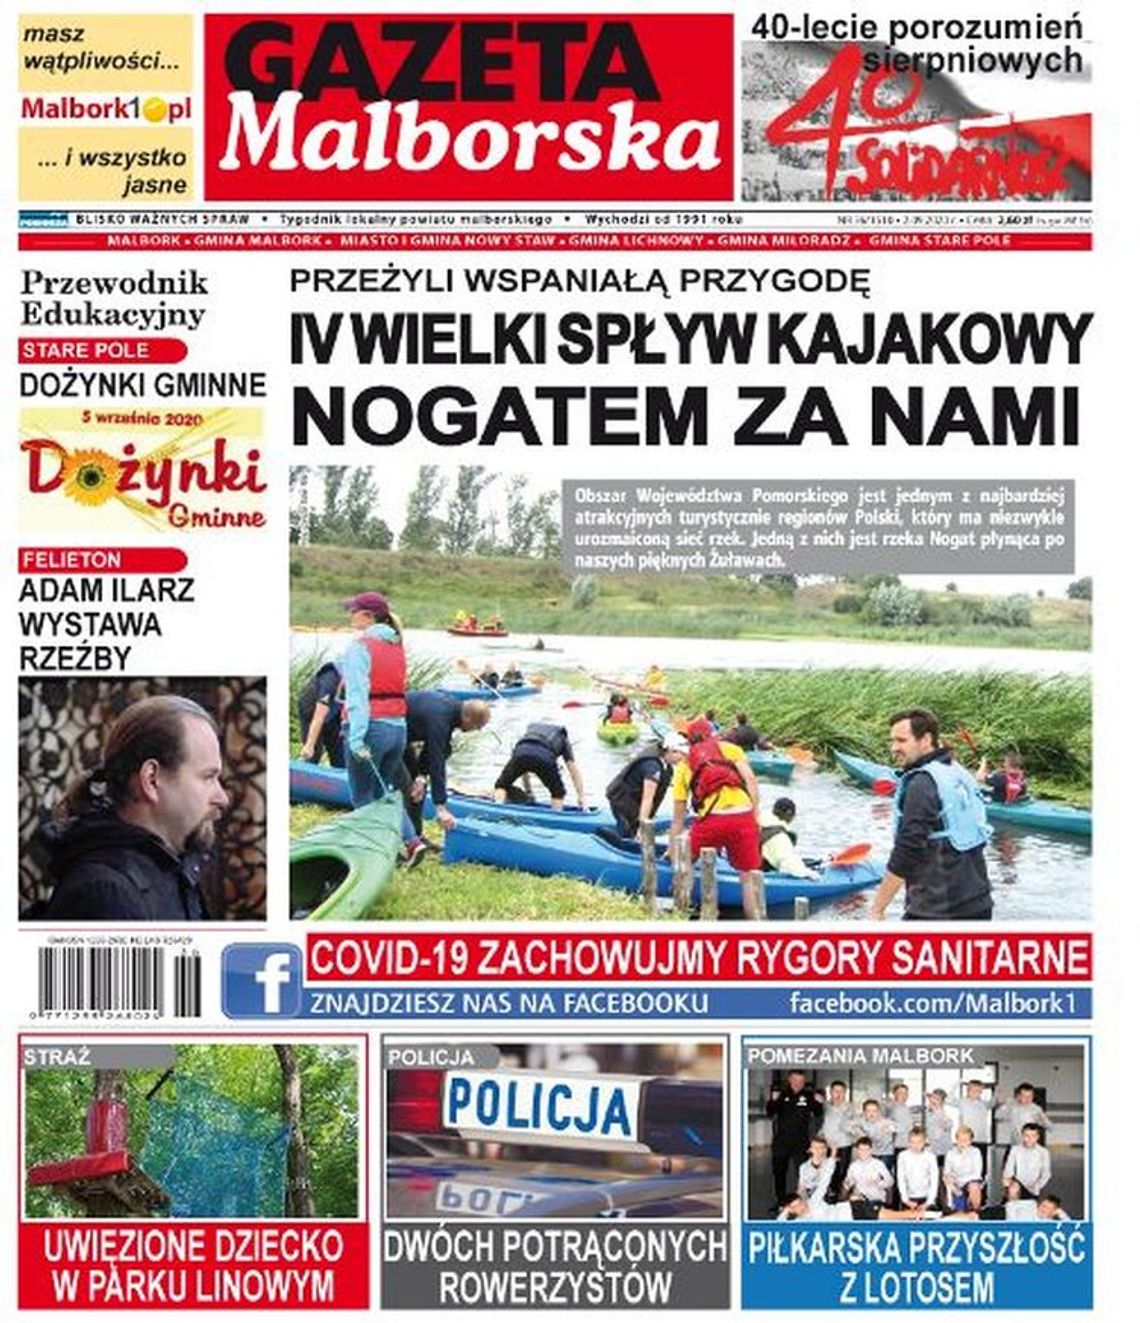 Nowy numer Gazety Malborskiej już dostępny w sklepach. Co w nim?